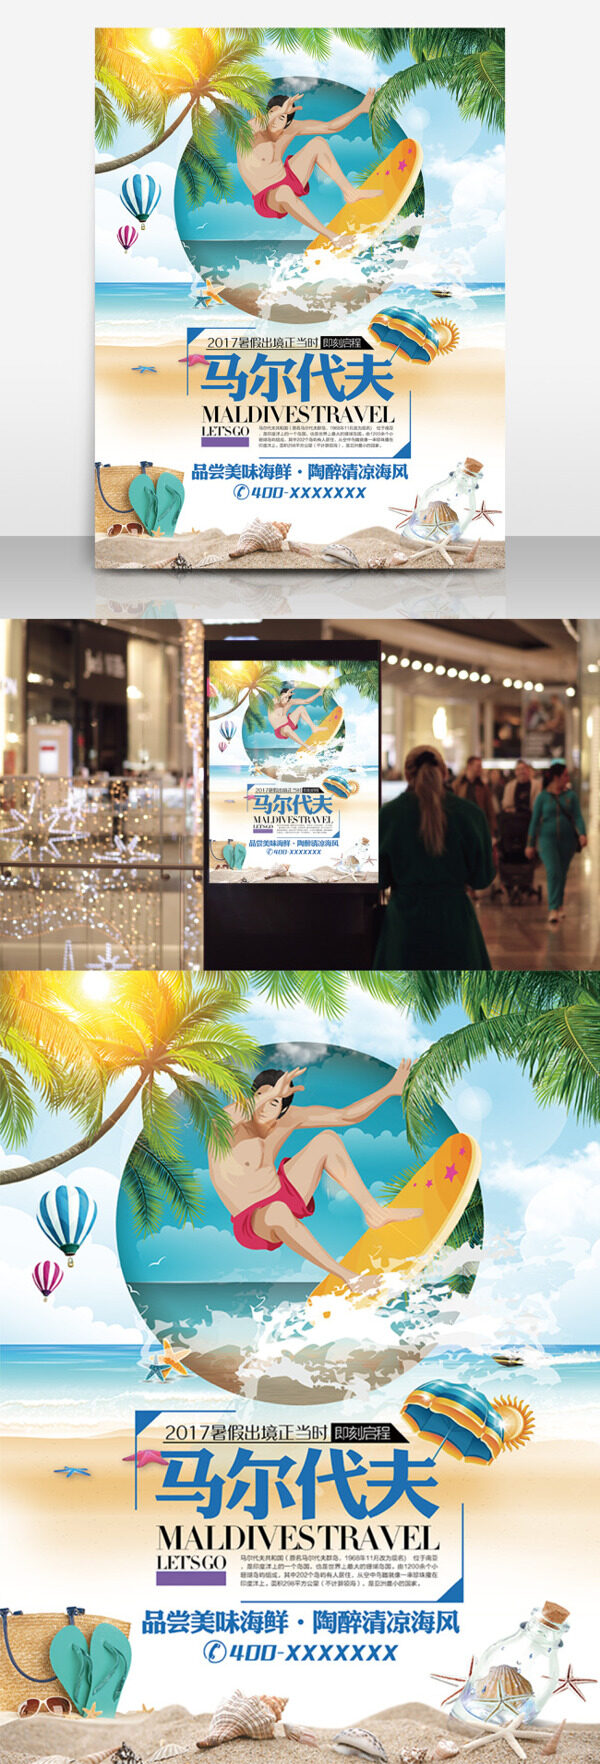 马尔代夫假期旅游促销海报